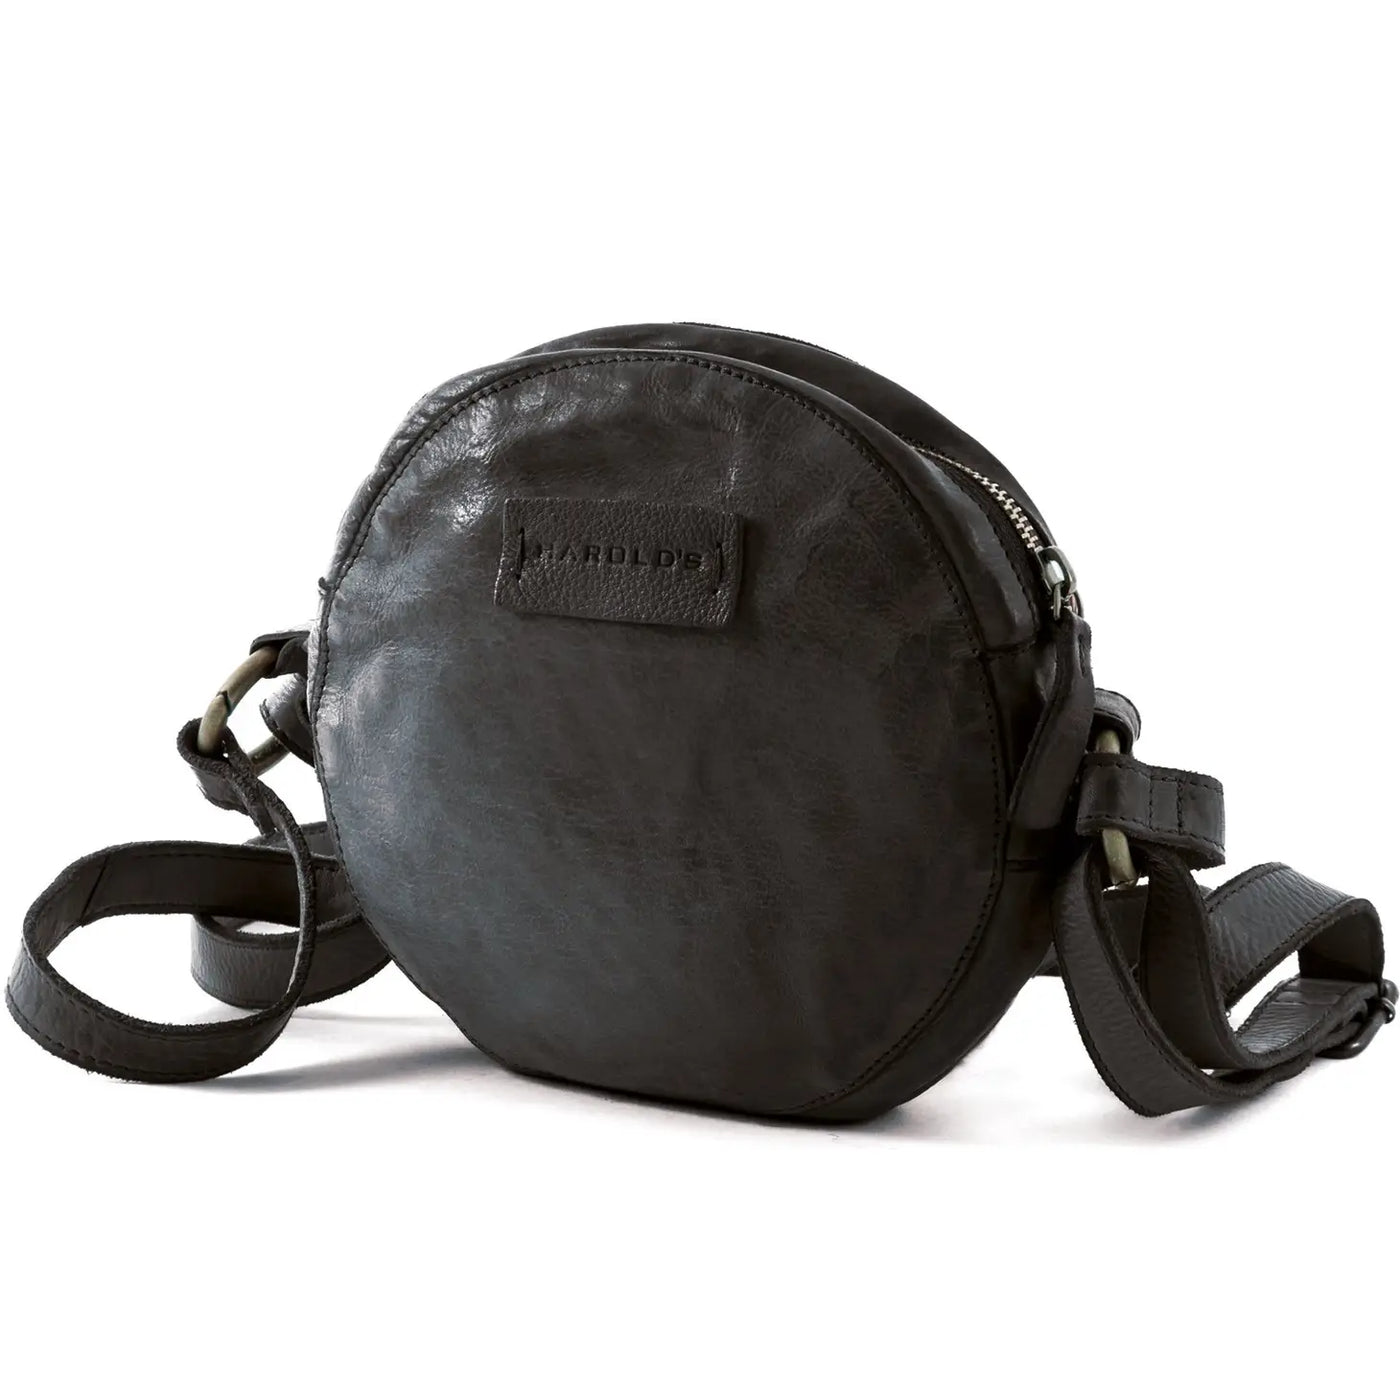 Leather Circle shoulder bag